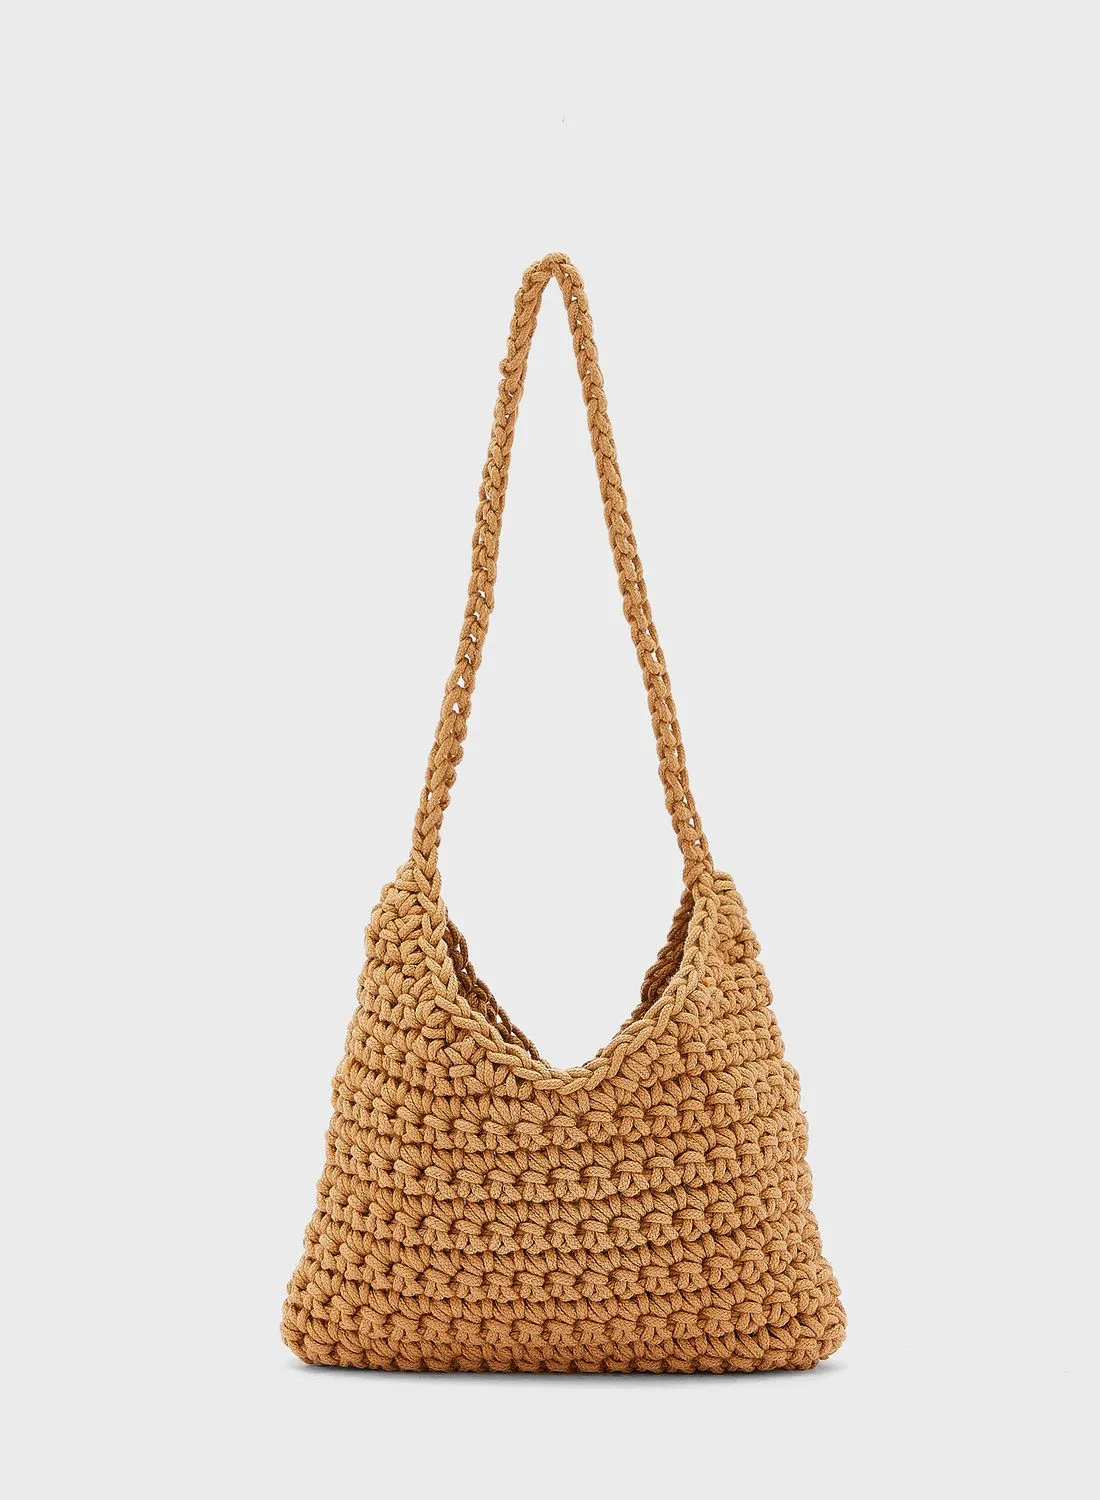 Ginger Weaved Crochet Shopper Bag